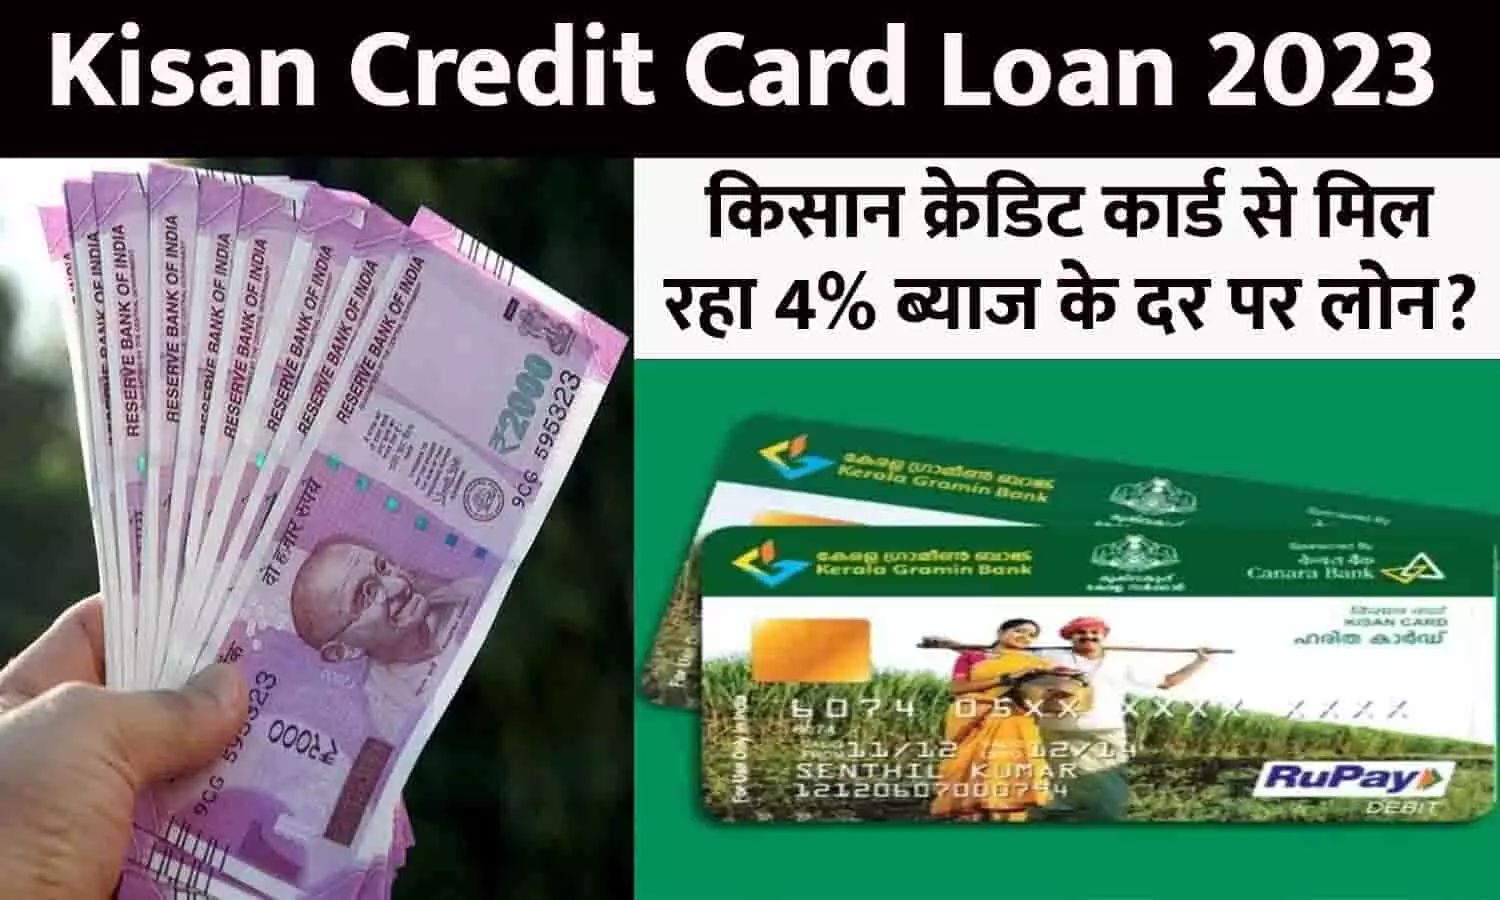 Kisan Credit Card Loan In Hindi 2023: किसान क्रेडिट कार्ड से मिल रहा 4% ब्याज के दर पर लोन? फटाफट जानें फायदे और बनवाने का तरीका